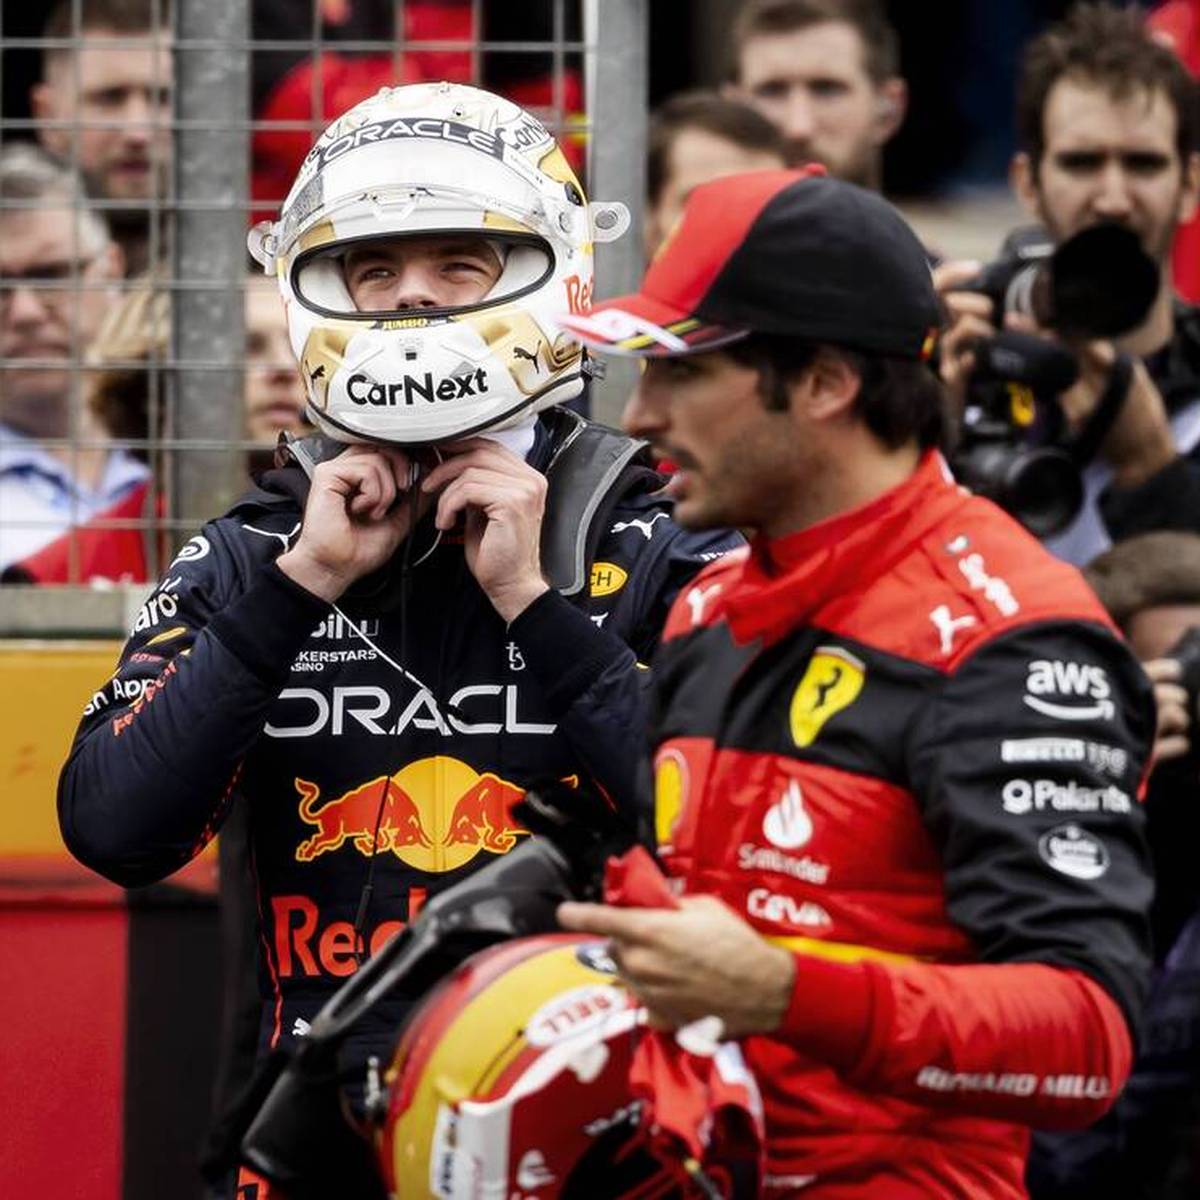 Der eine ist Weltmeister, der andere wartet auf seinen ersten GP-Sieg: Max Verstappen war Carlos Sainz oft im Weg. Kann der Ferrari-Star endlich aus dem Schatten treten?